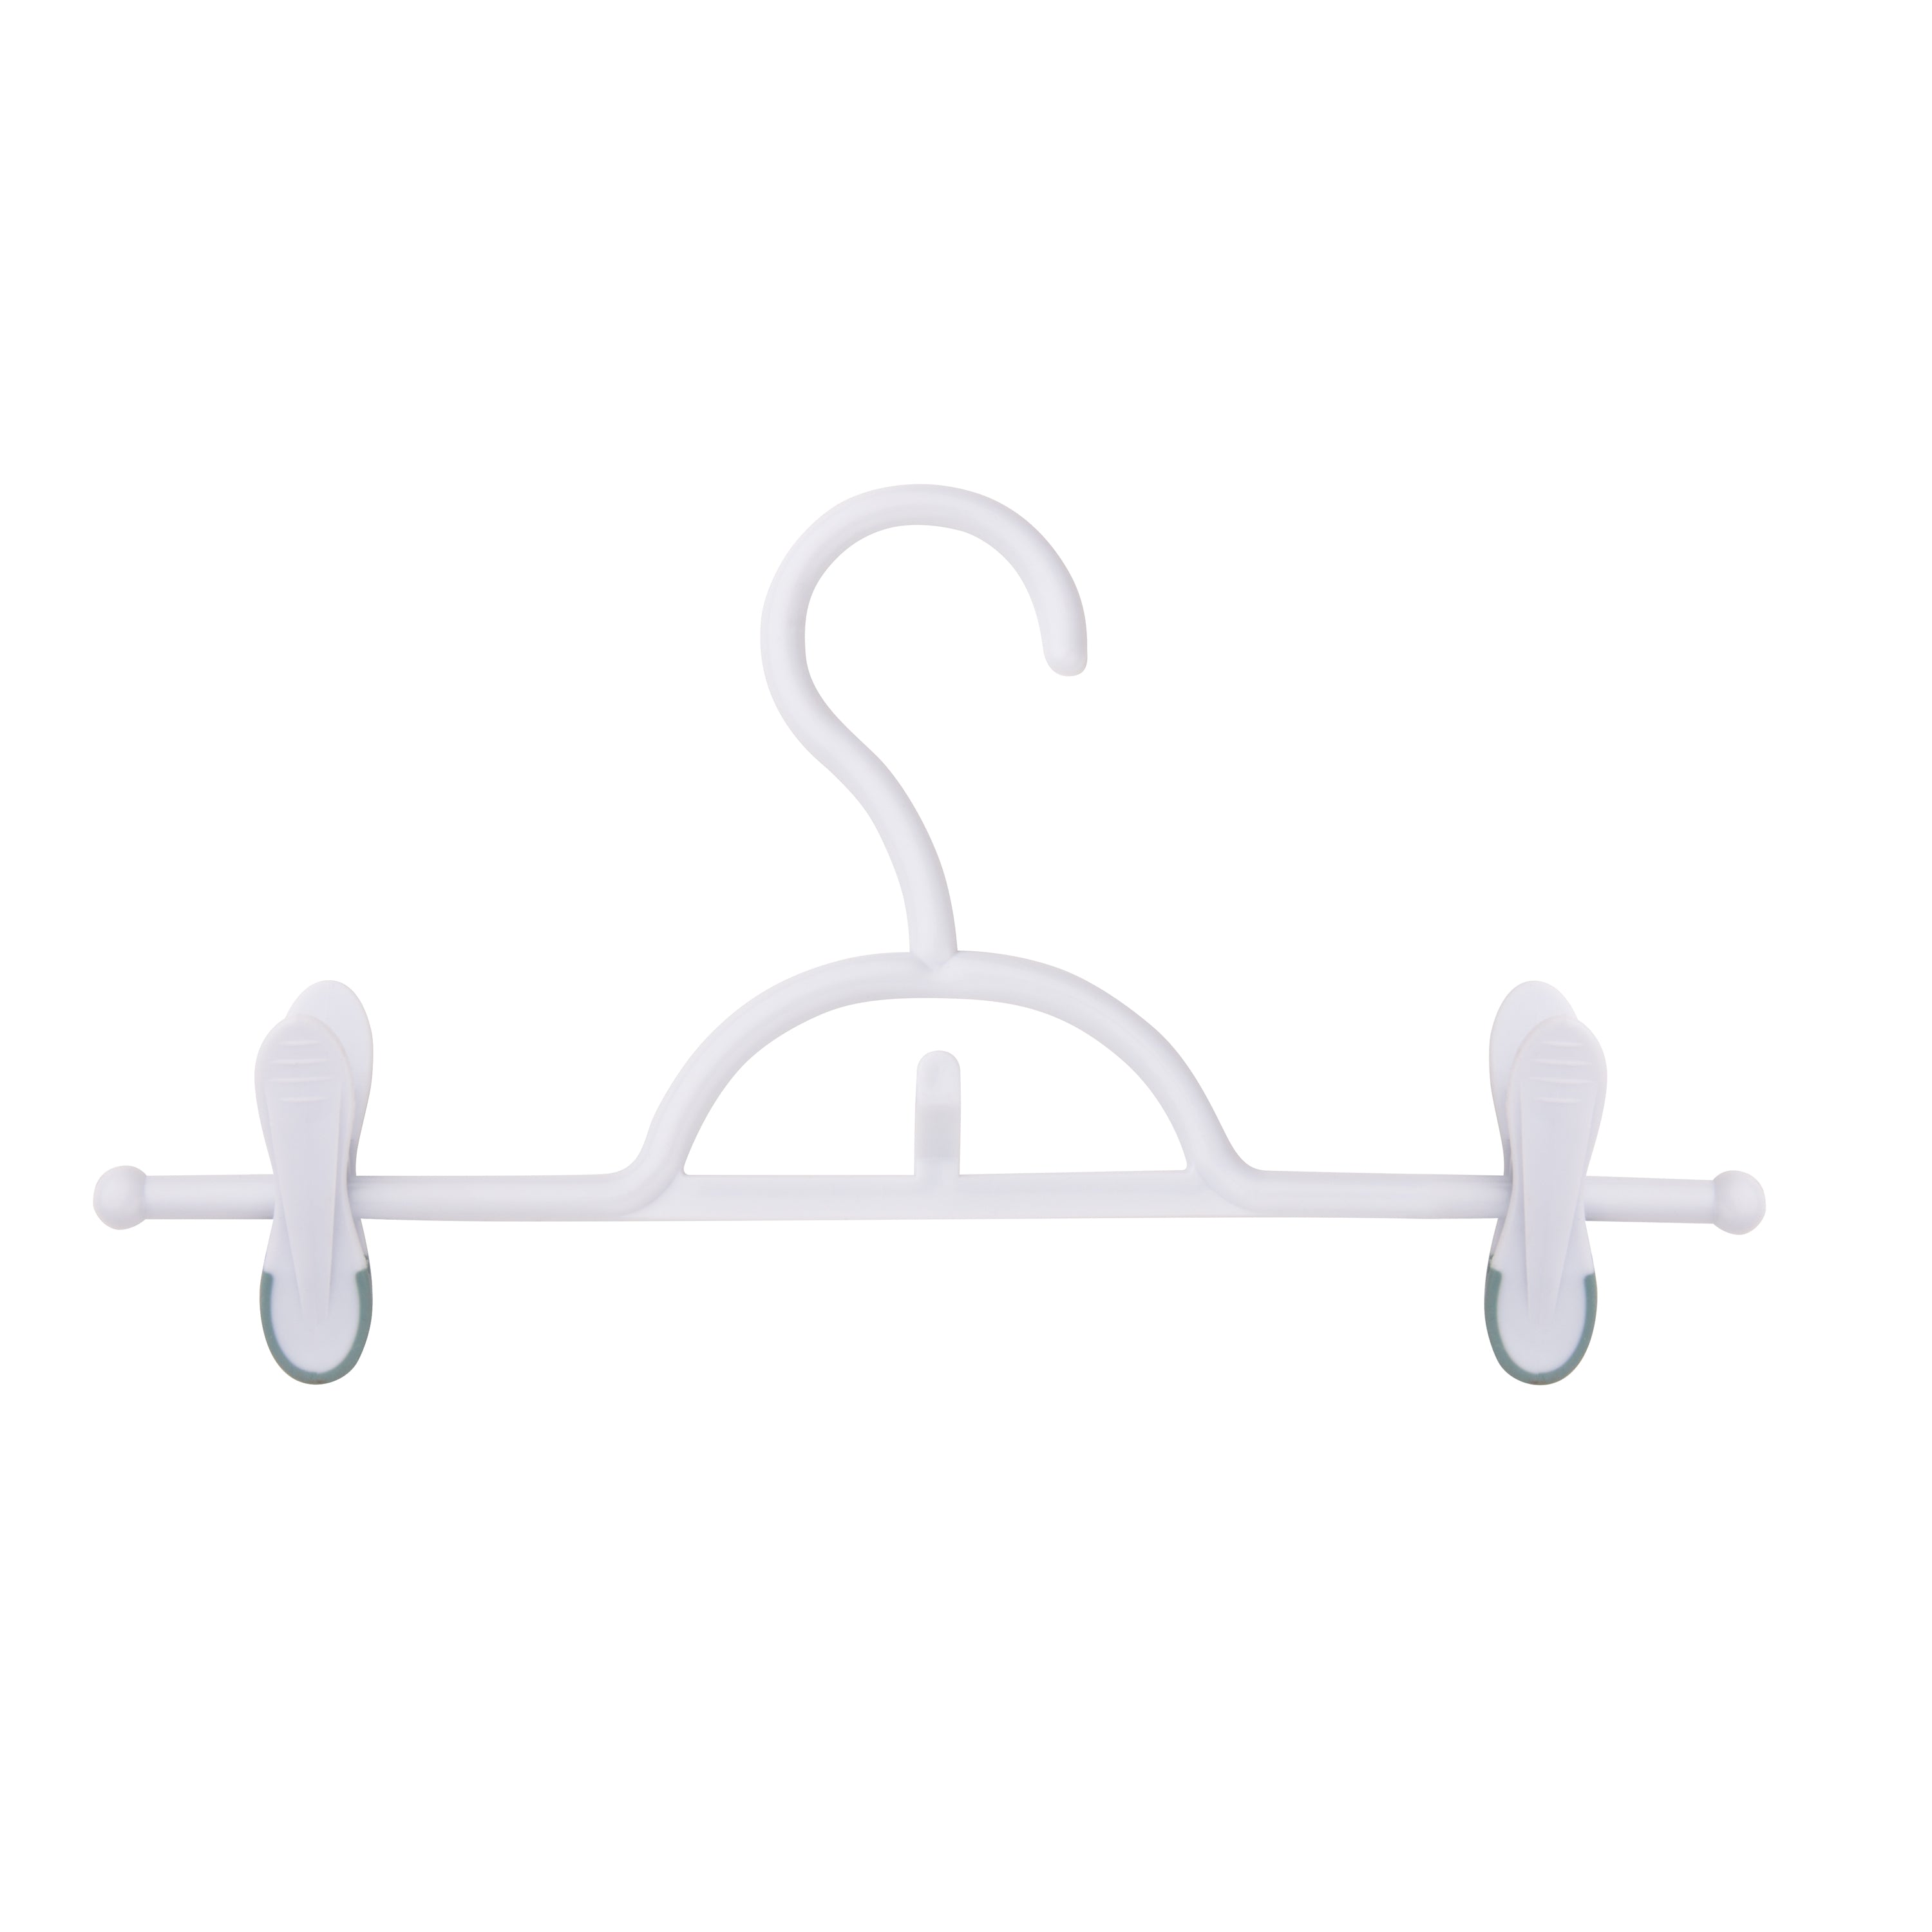 White Plastic Snap Grip Pant/Skirt Hanger w/ Swivel Hook - Plastic